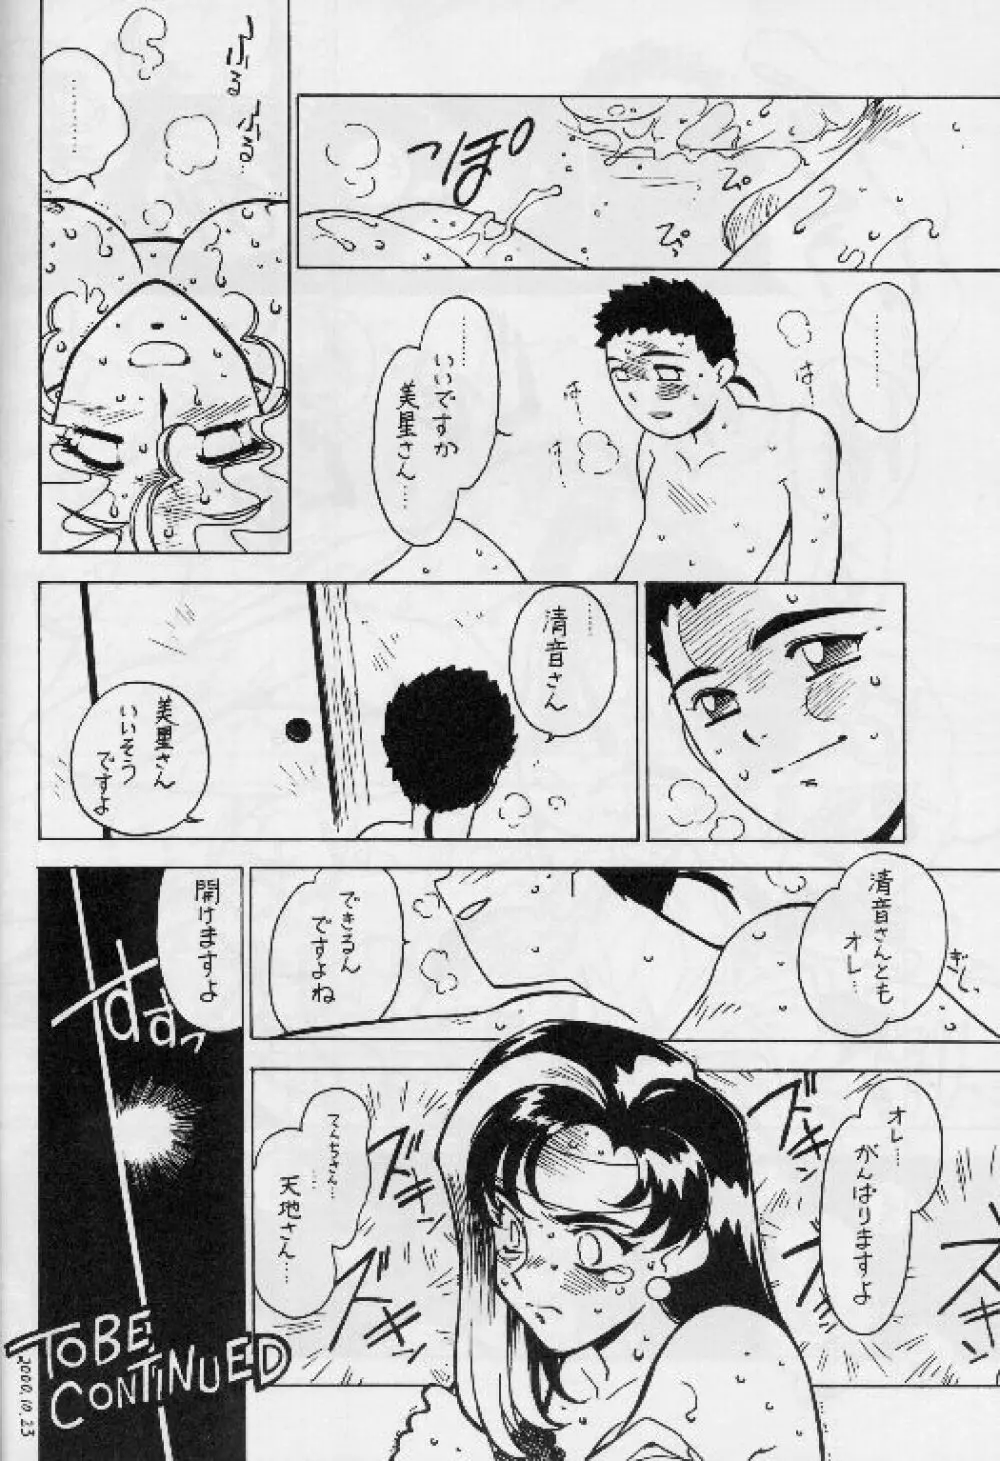 凶悪的指導 Vol.11 じゅんび号 Version 2 17ページ